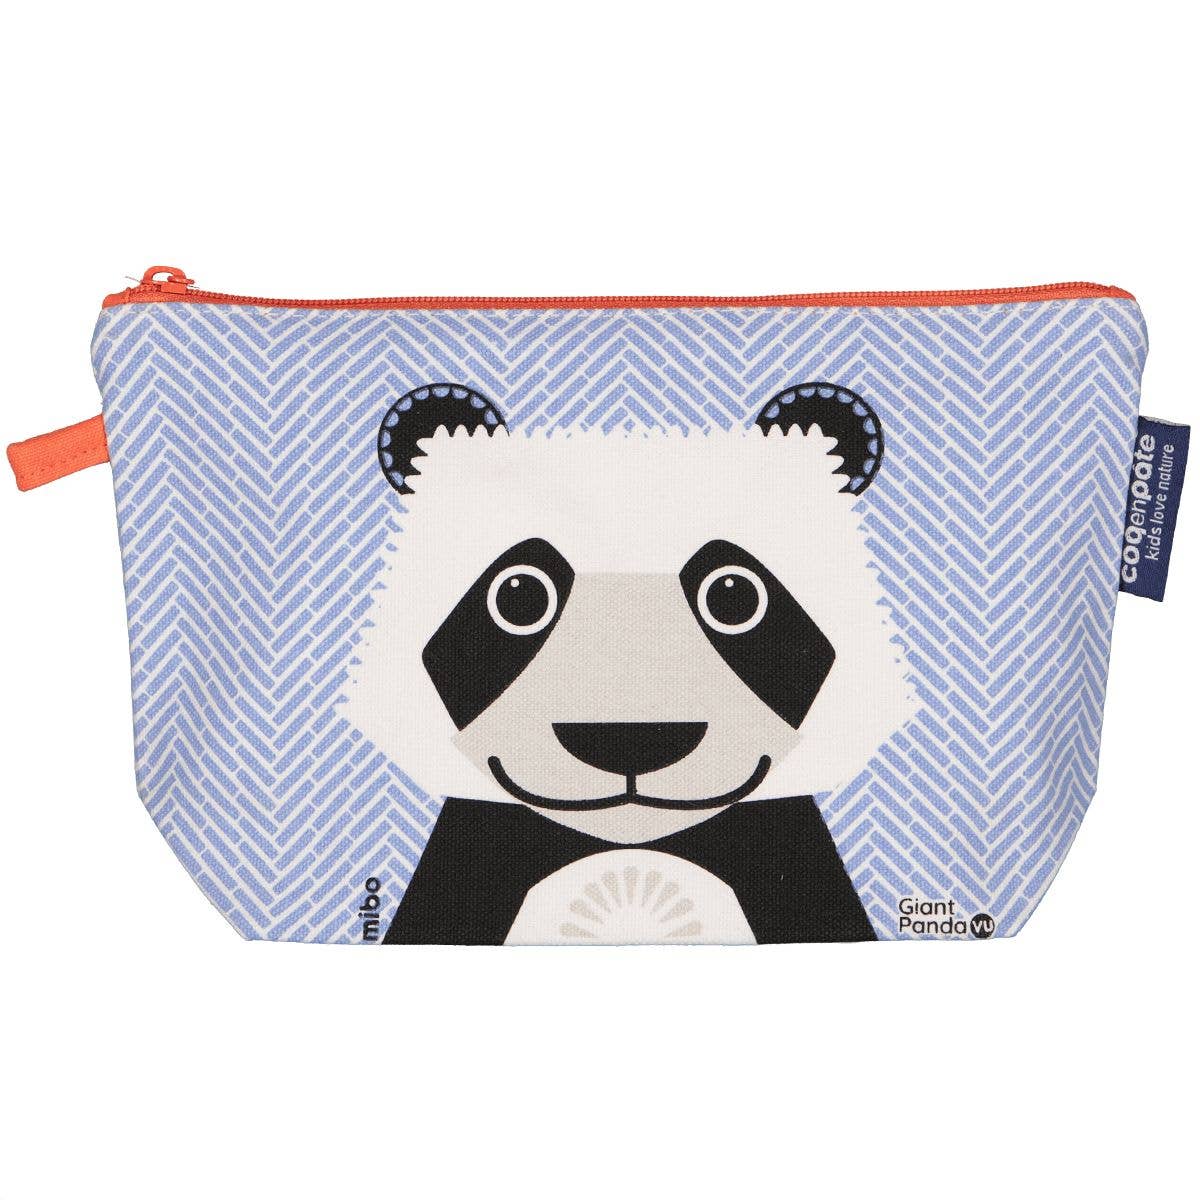 Pencil Case Pouch - Panda